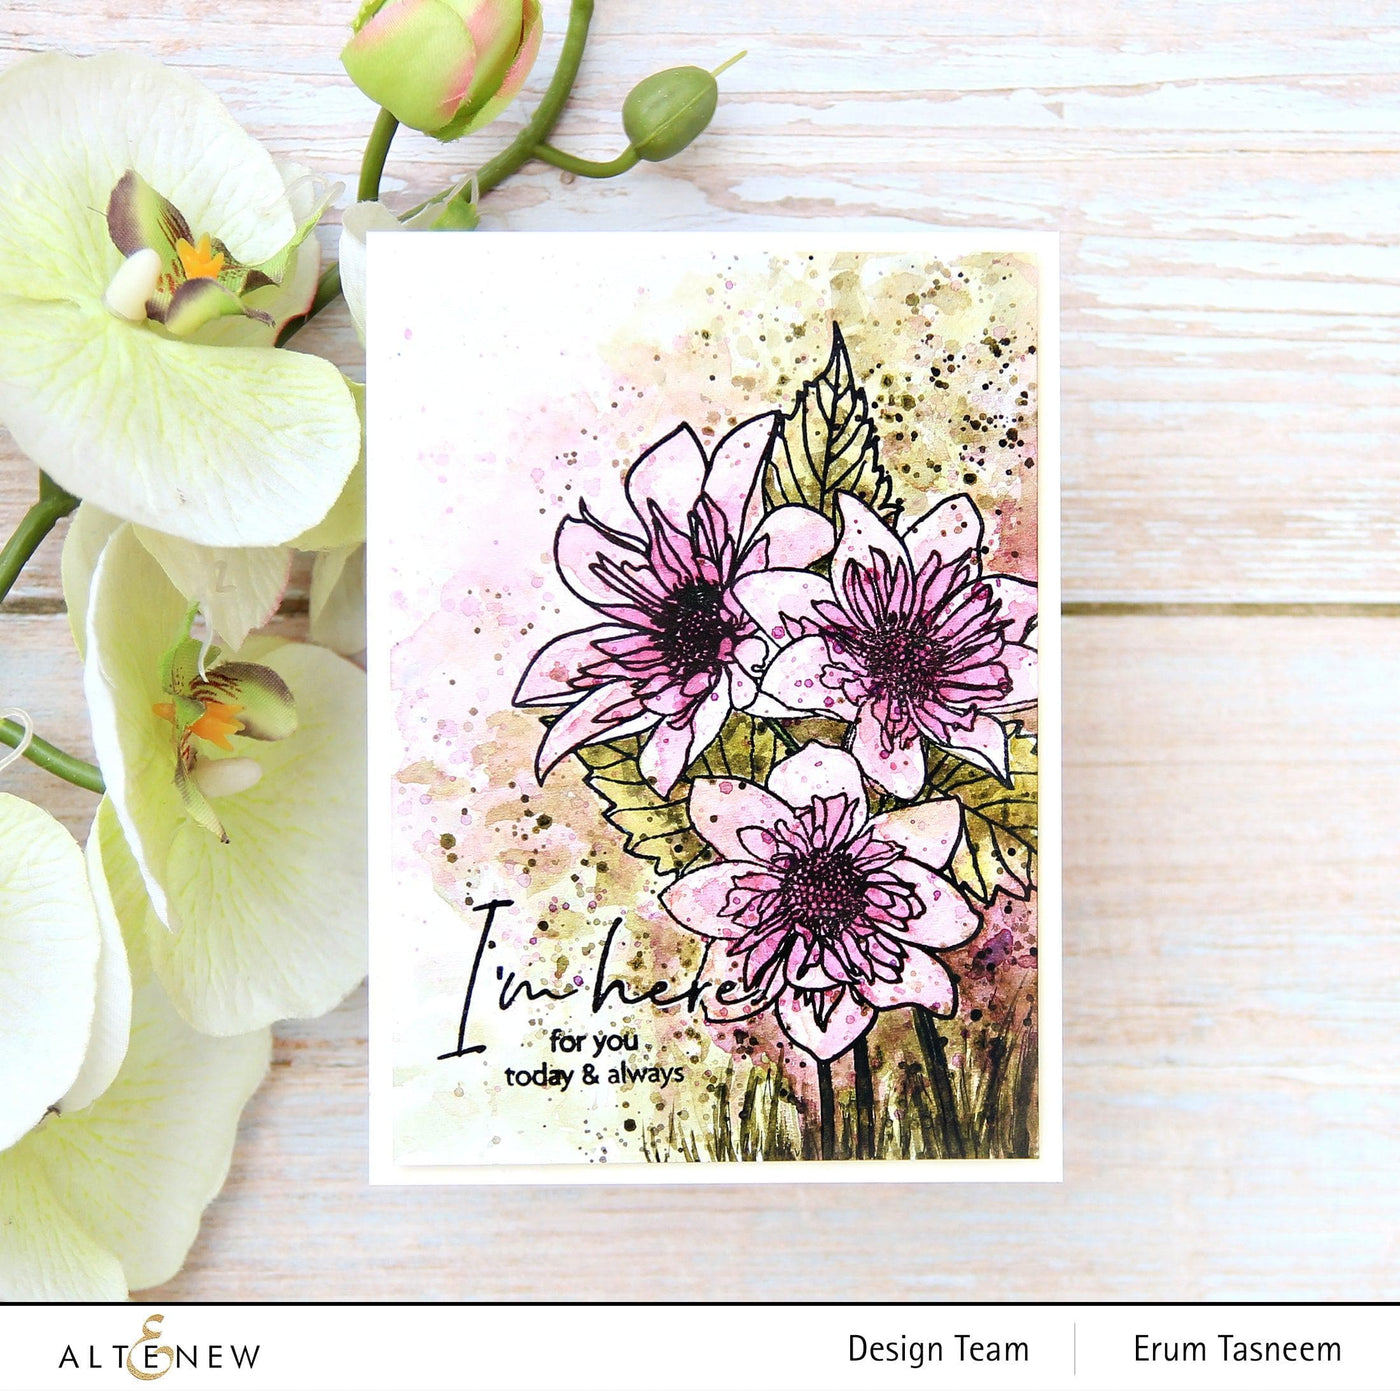 Altenew Stamp & Watercolor Bundle Paint-A-Flower: Fashion Monger Dahlia & Artists' Watercolor 24 Pan Set Bundle